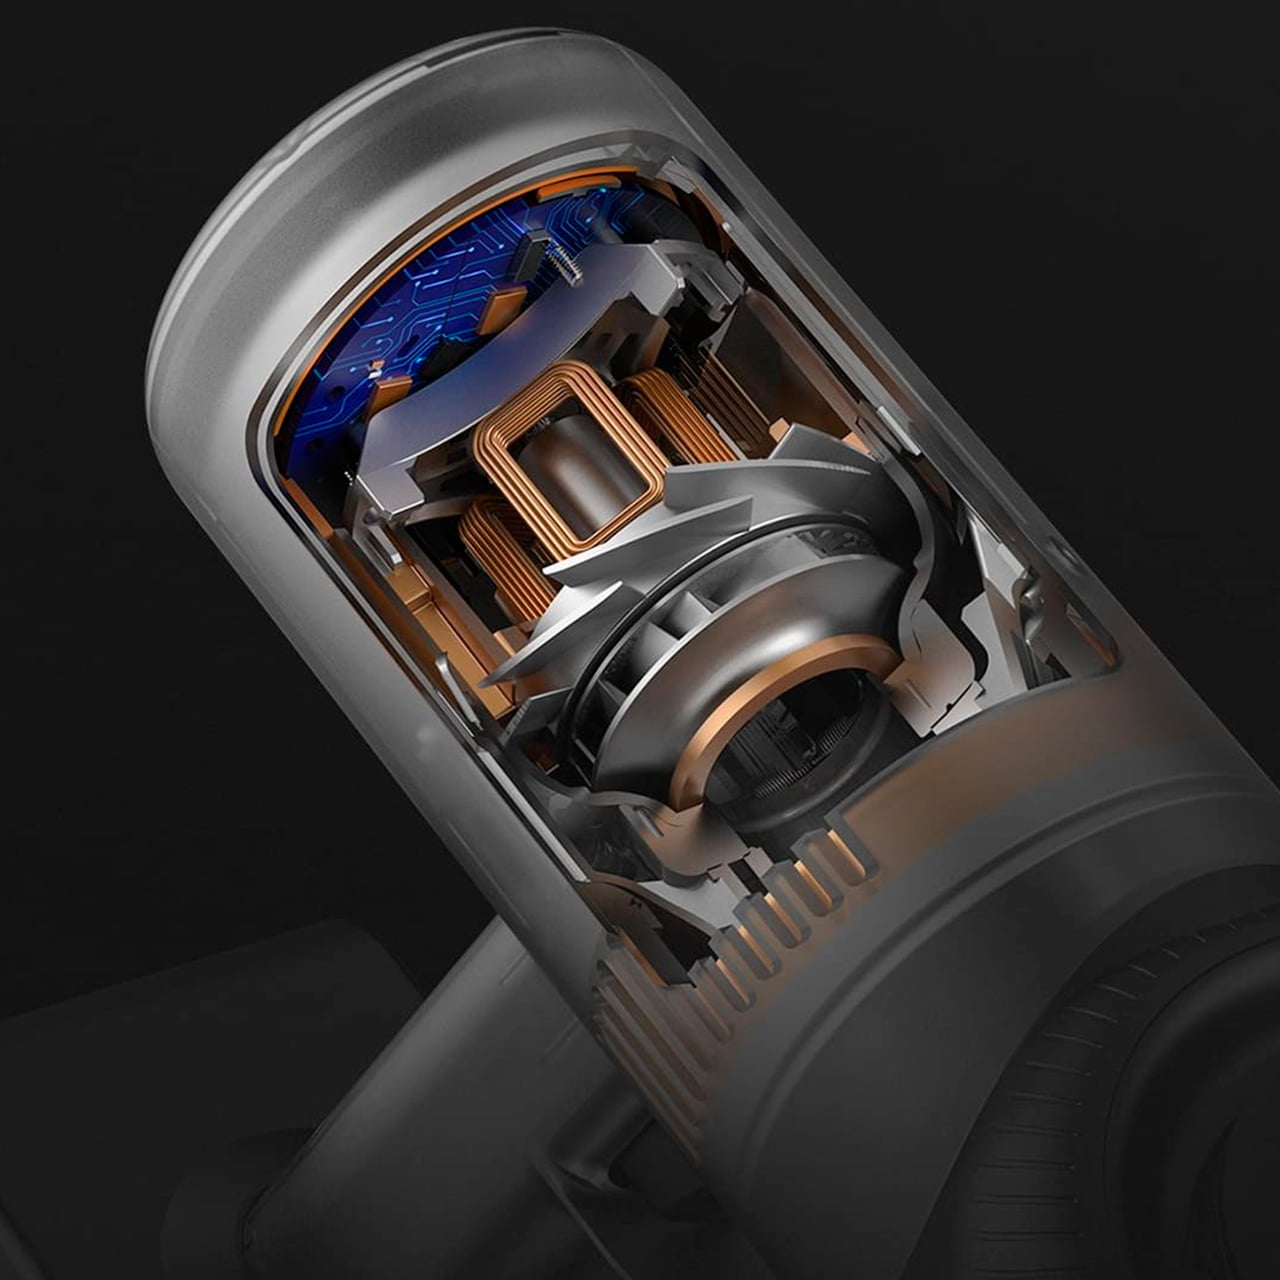 Dreame V10 Pro оснащён бесщёточным мотором обеспечивающим пылесосу мощность всасывания до 140 авт или 22000 Па